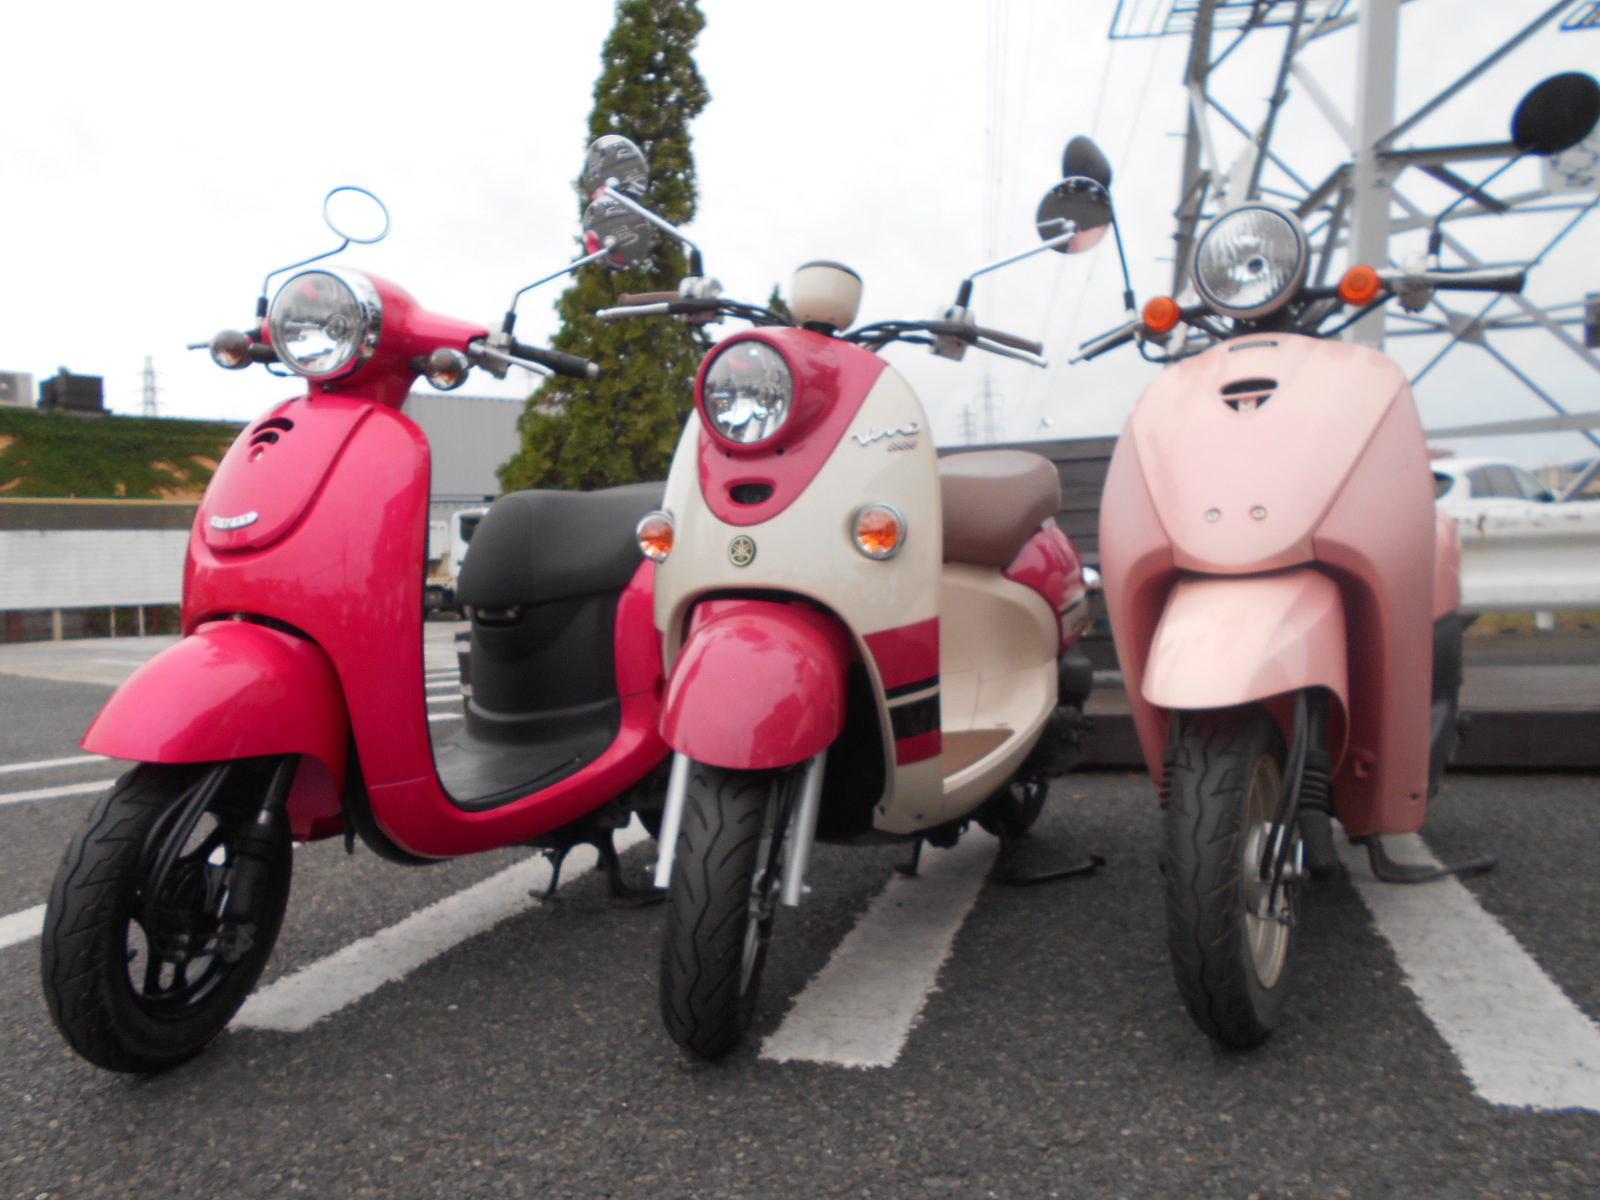 ピンクな原付 最新情報 U Media ユーメディア 中古バイク 新車バイク探しの決定版 神奈川 東京でバイク探すならユーメディア